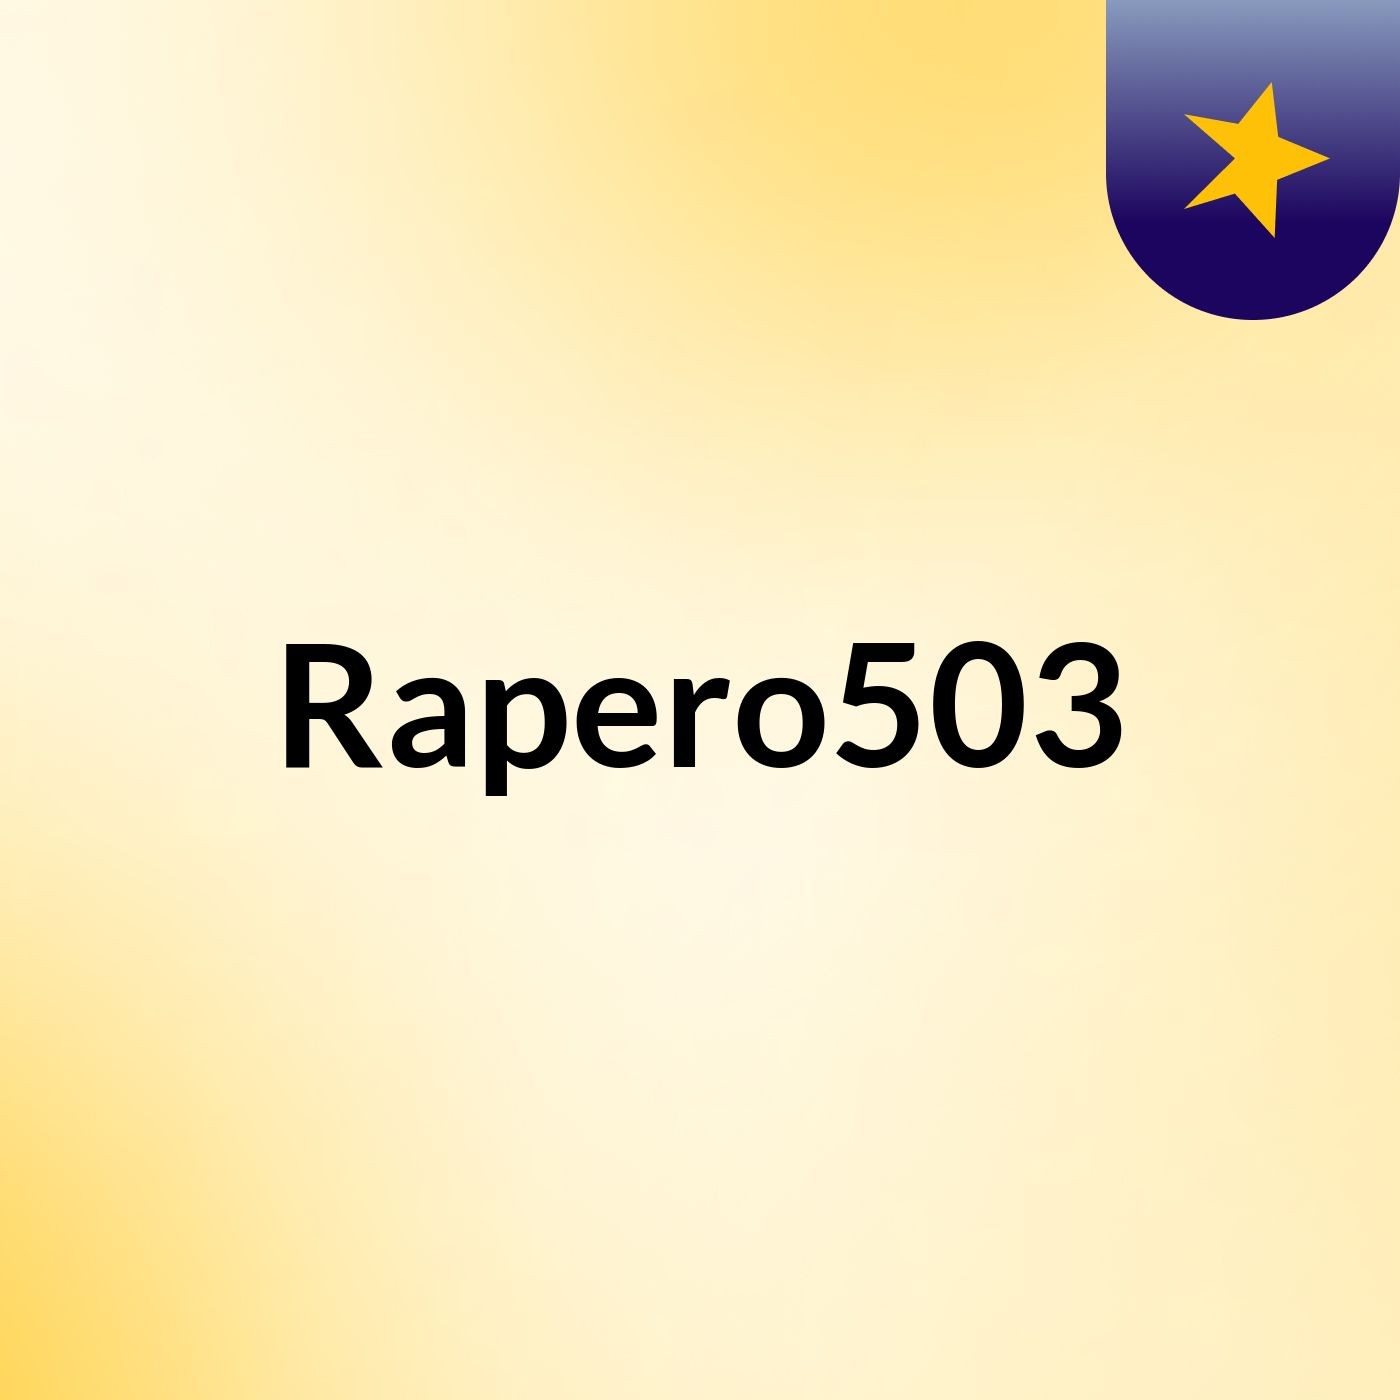 Rapero503